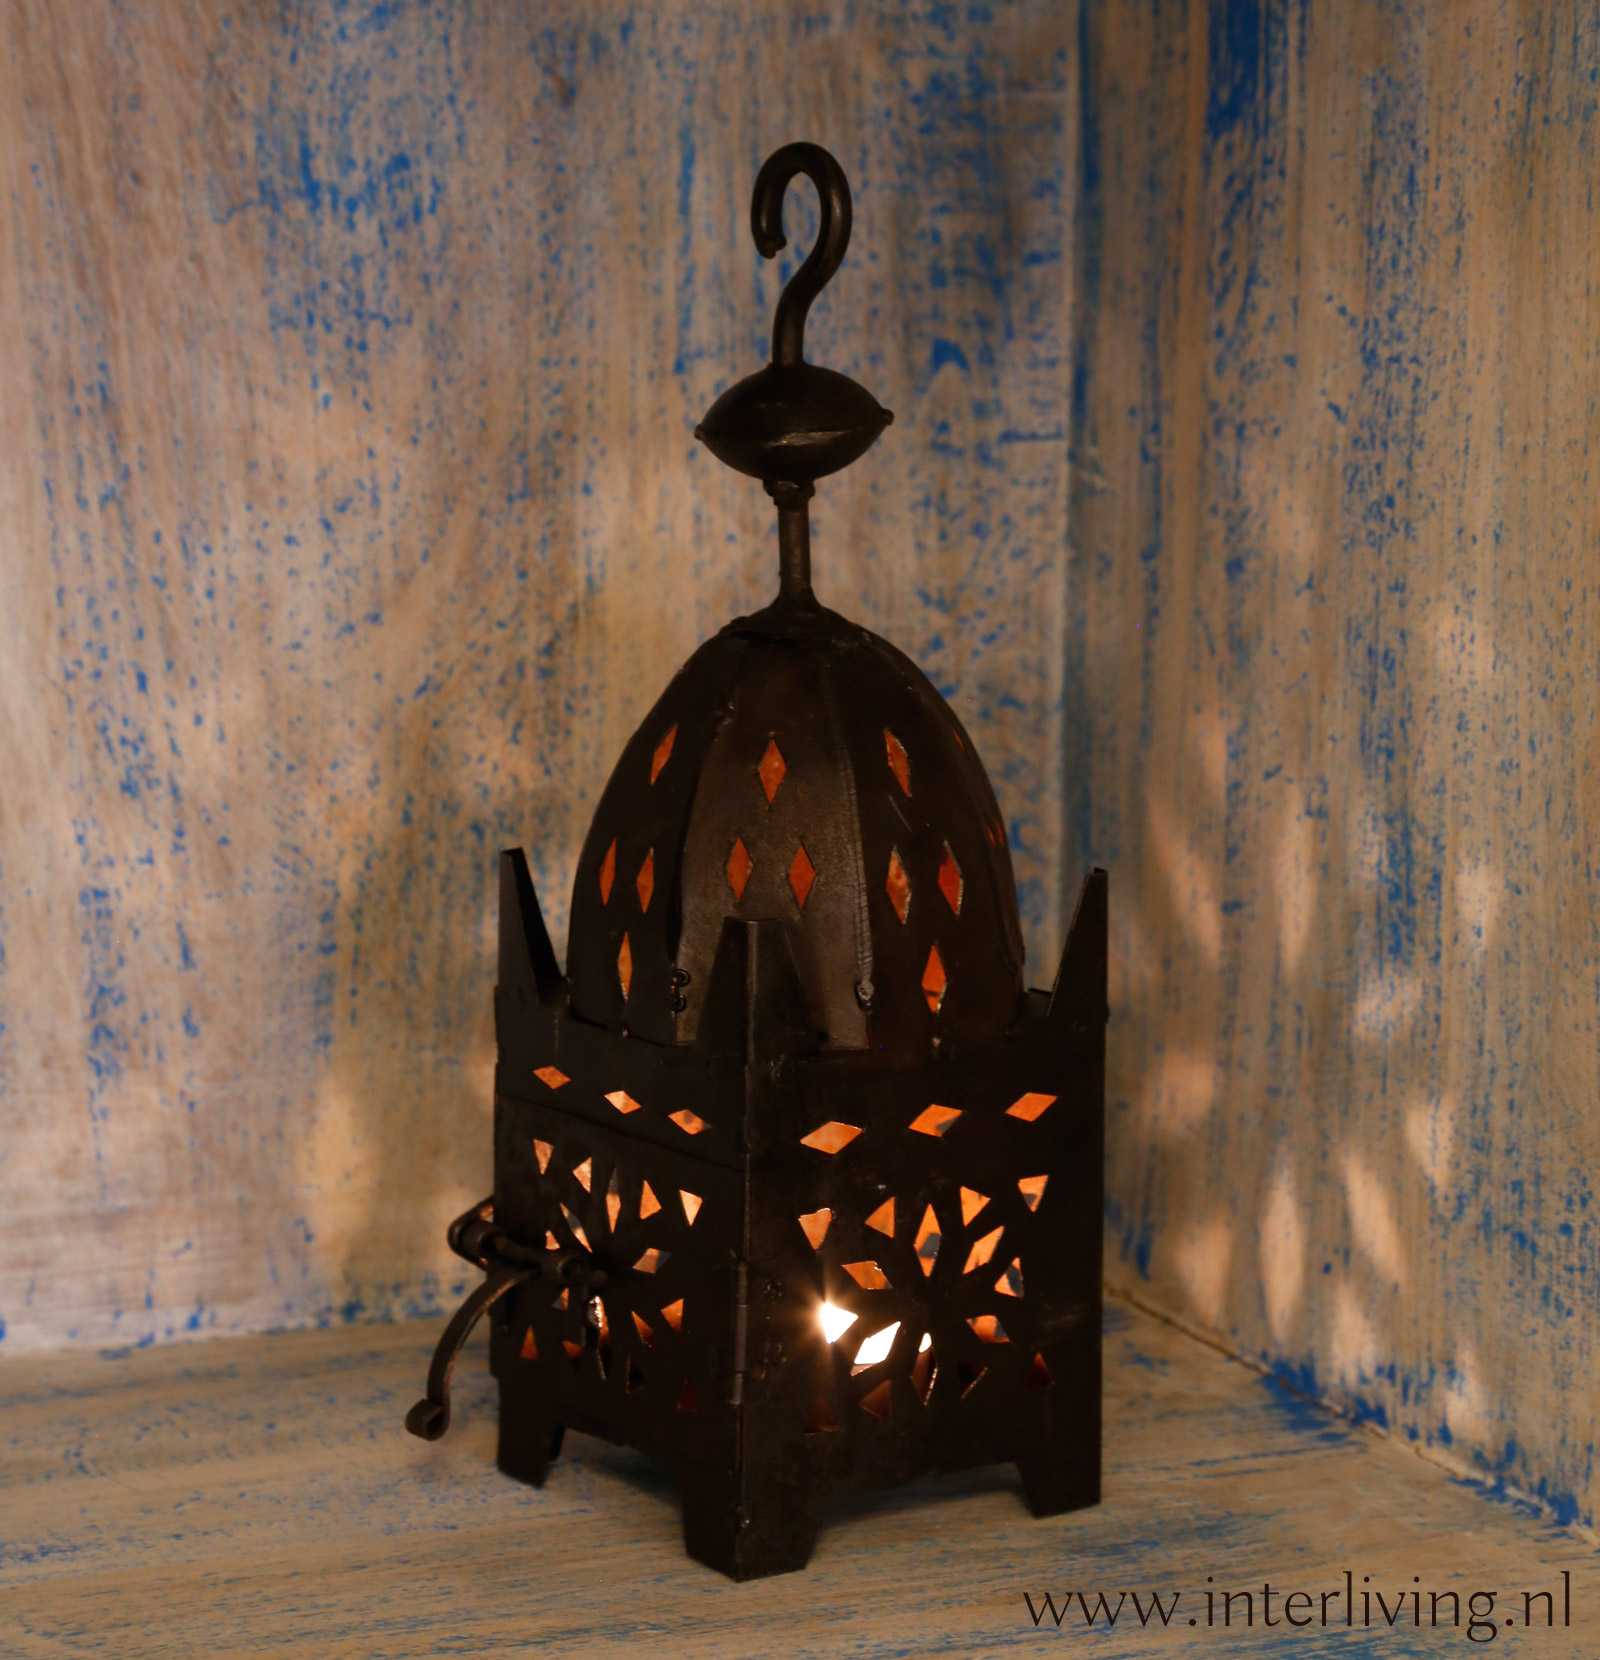 Habitat Jonge dame George Hanbury Sfeervolle zwarte metalen Marokkaanse lantaarn windlicht uit Marrakesh